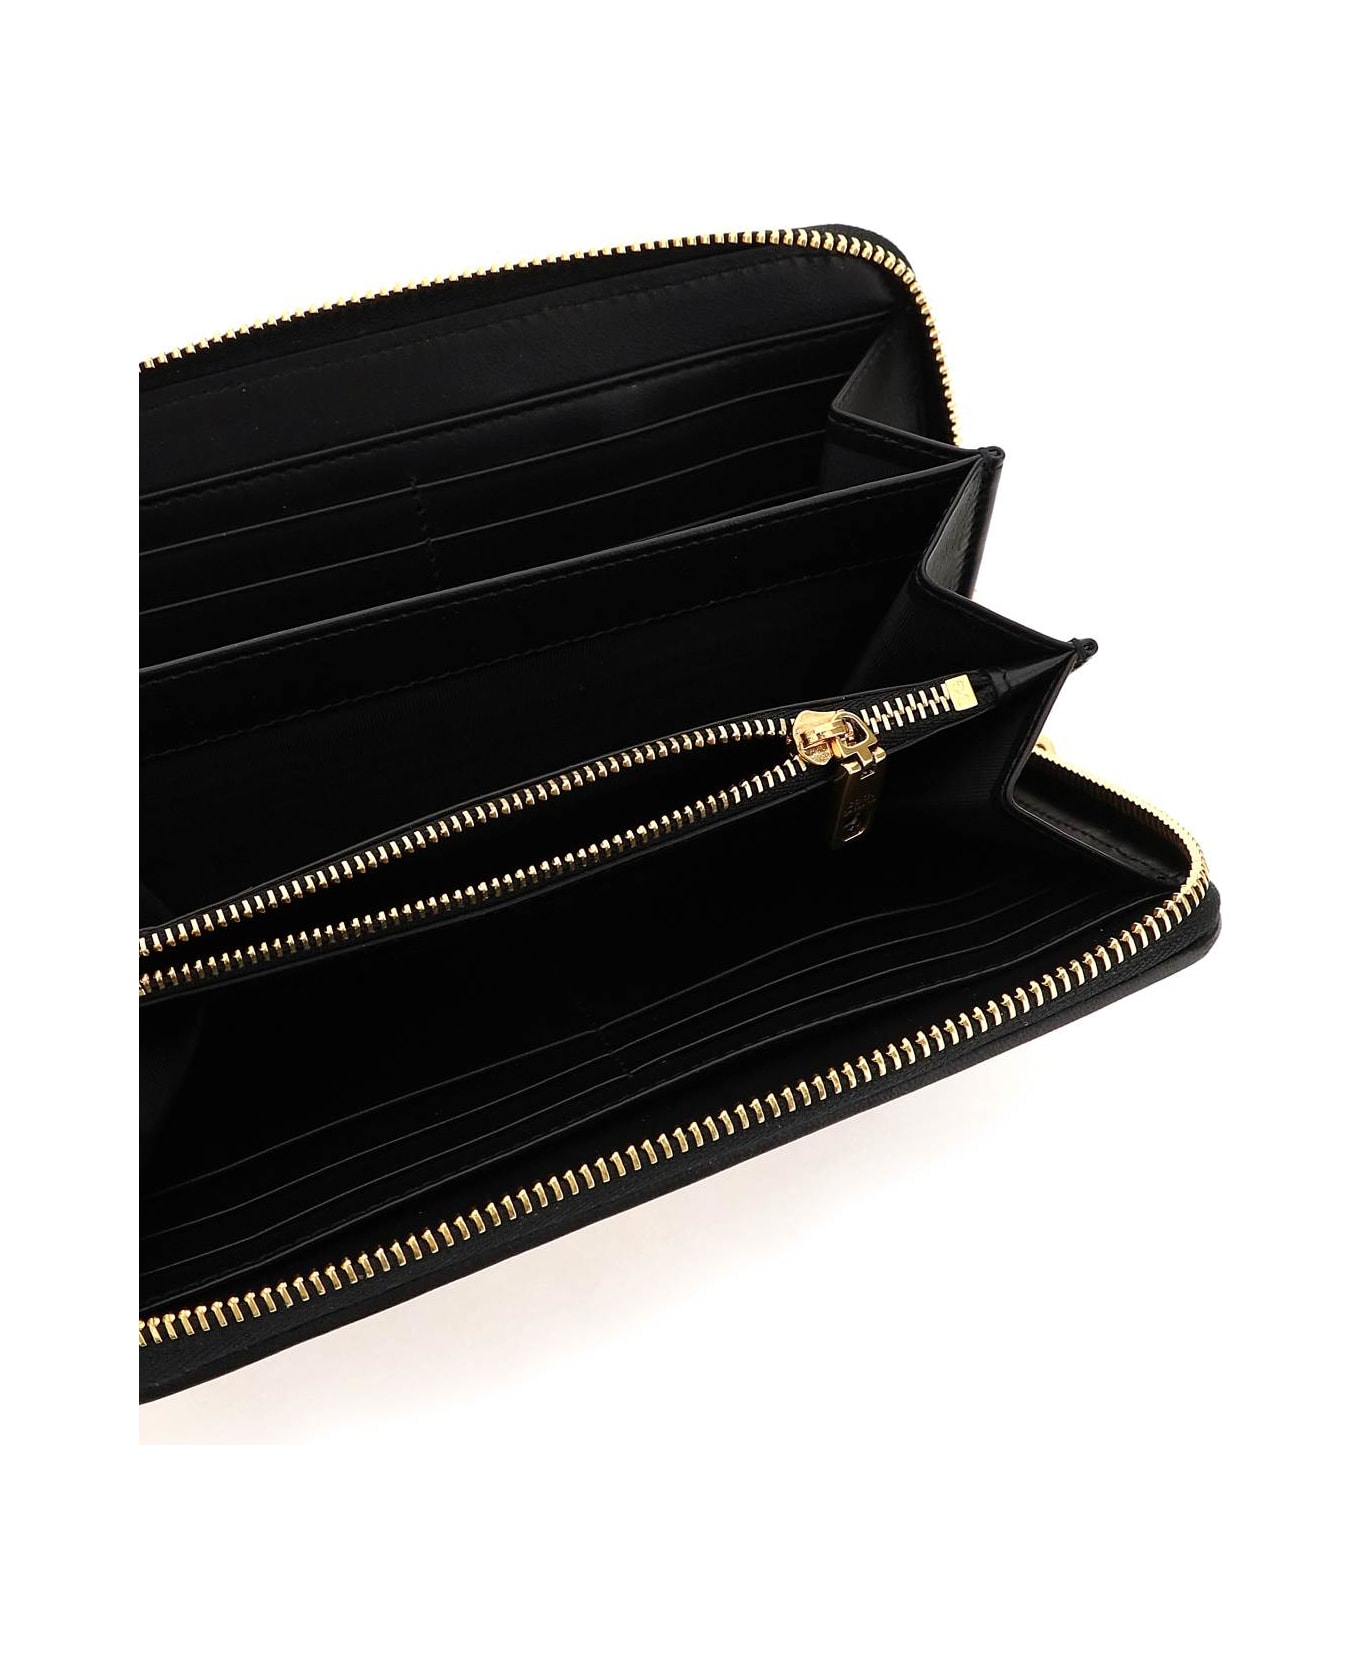 Dolce & Gabbana Devotion Zip-around Wallet - Black 財布